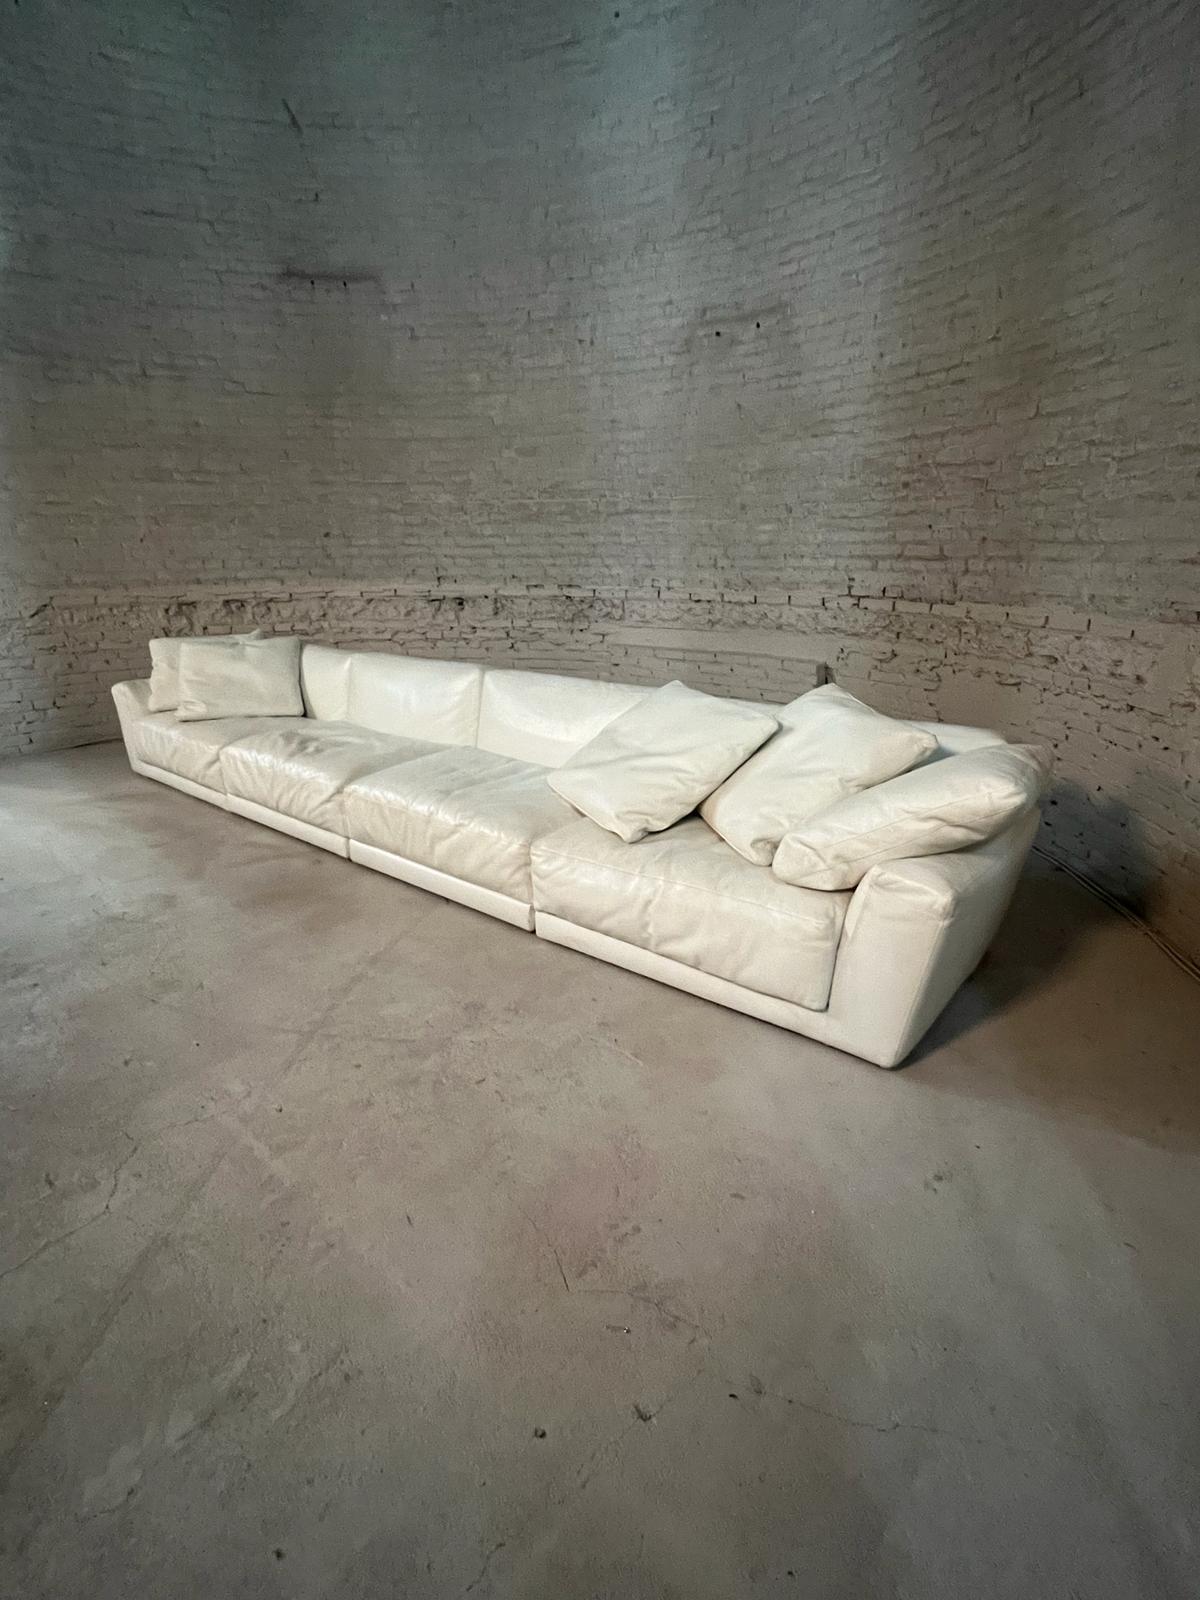 Ein extravagantes Sofa aus weichem Kalbsleder. Hergestellt von B&B Italia, entworfen von Antonio Citterio. Das Set mit dem Namen 'LUIS' enthält 7 modulare Einheiten, die in verschiedenen Aufstellungen kombiniert werden können.

Die Kissen sind mit